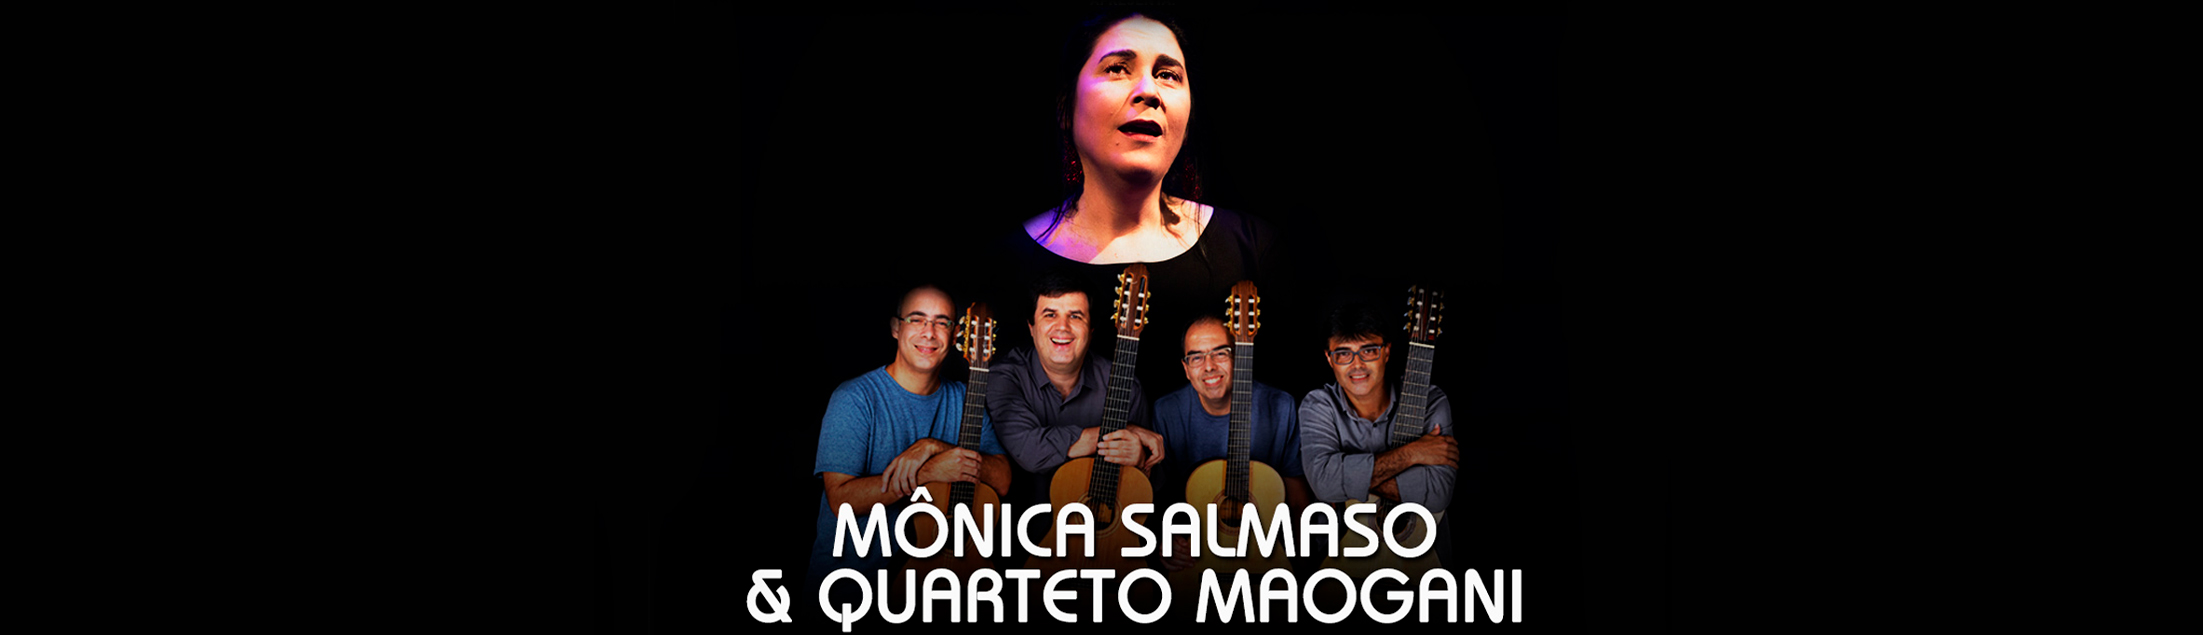 Mônica Salmaso e Quarteto Maogani no Teatro Rival